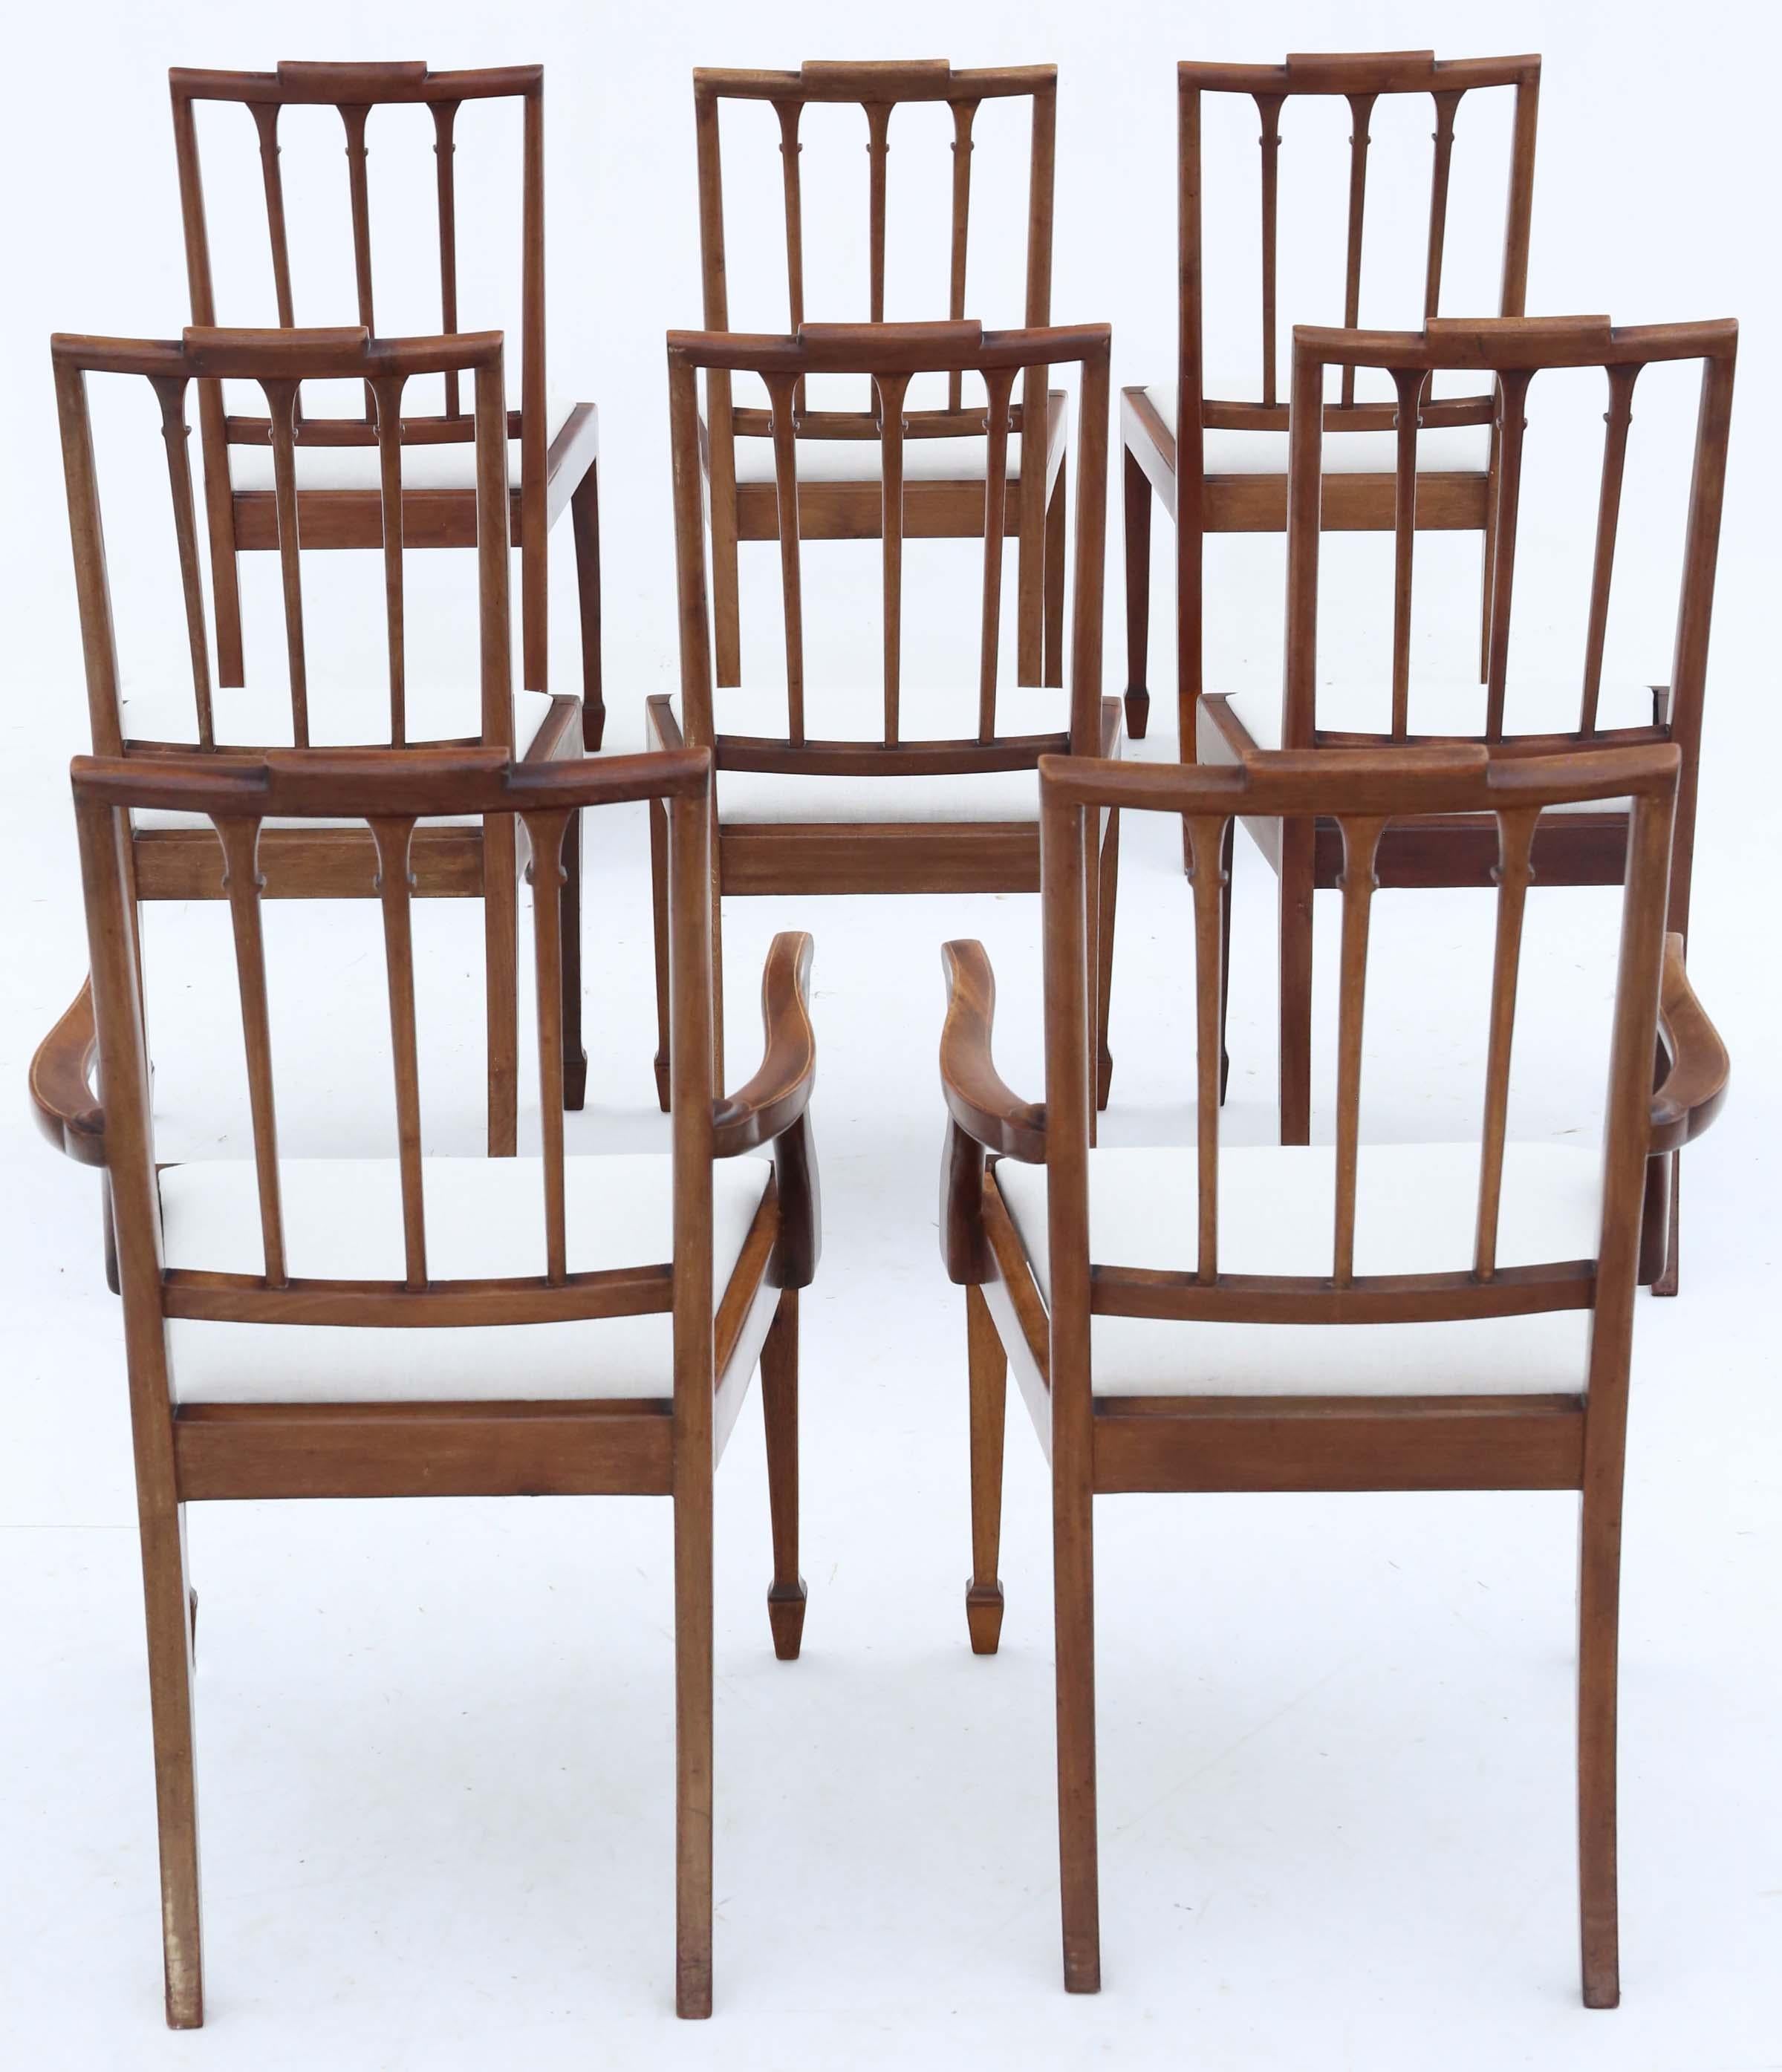 Entdecken Sie den zeitlosen Charme dieses exquisiten Satzes von 8 (6 + 2) georgianischen Mahagoni-Esszimmerstühlen, die um die Wende zum 20. Jahrhundert, also um 1900, gefertigt wurden. Diese Stühle verkörpern die Eleganz der georgianischen Ära mit